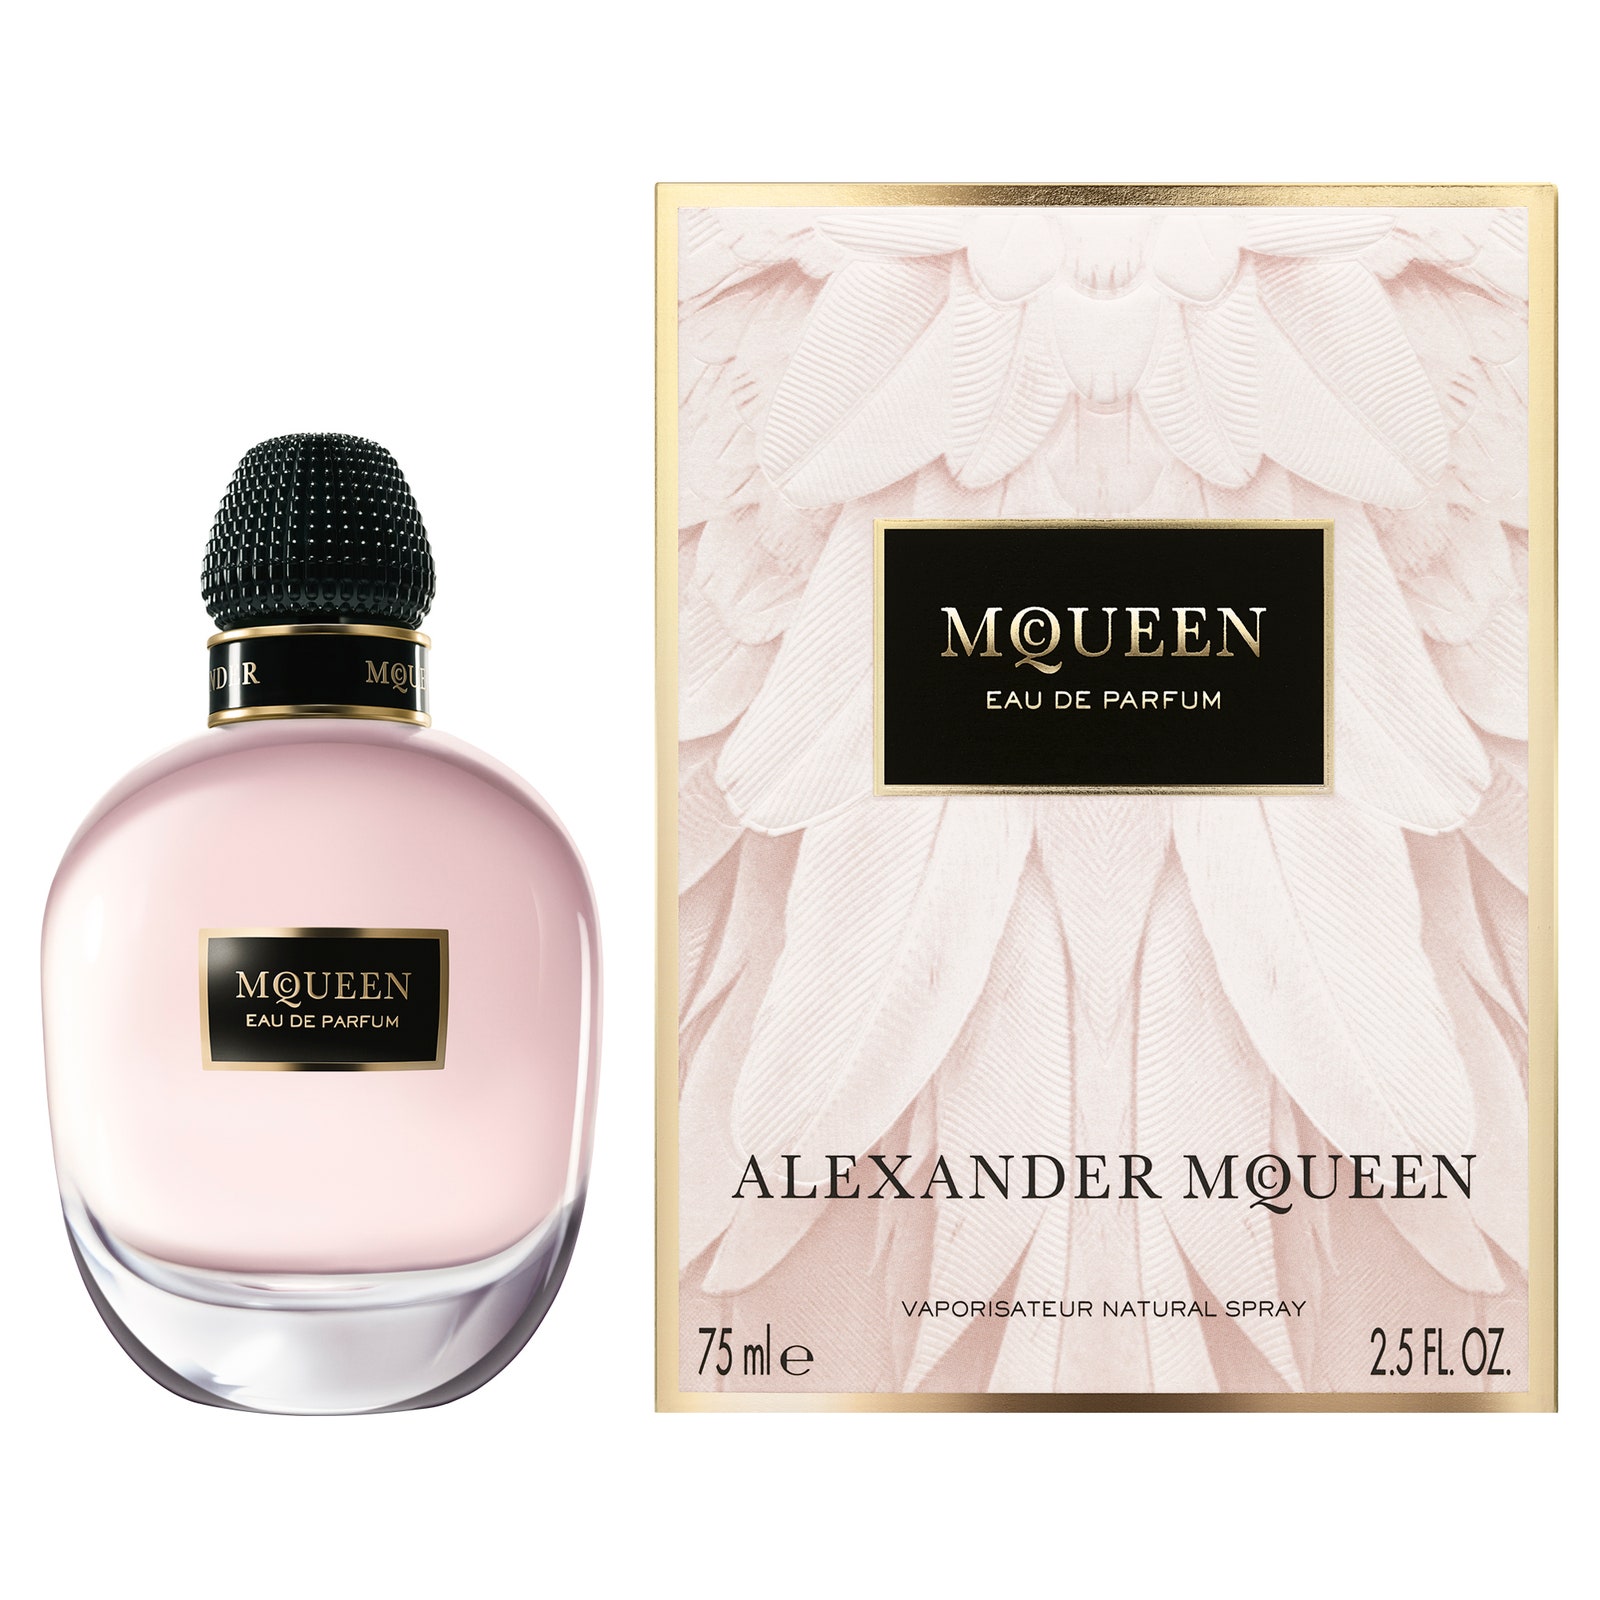 Новый аромат Alexander McQueen ингредиенты и оформление флакона | Allure